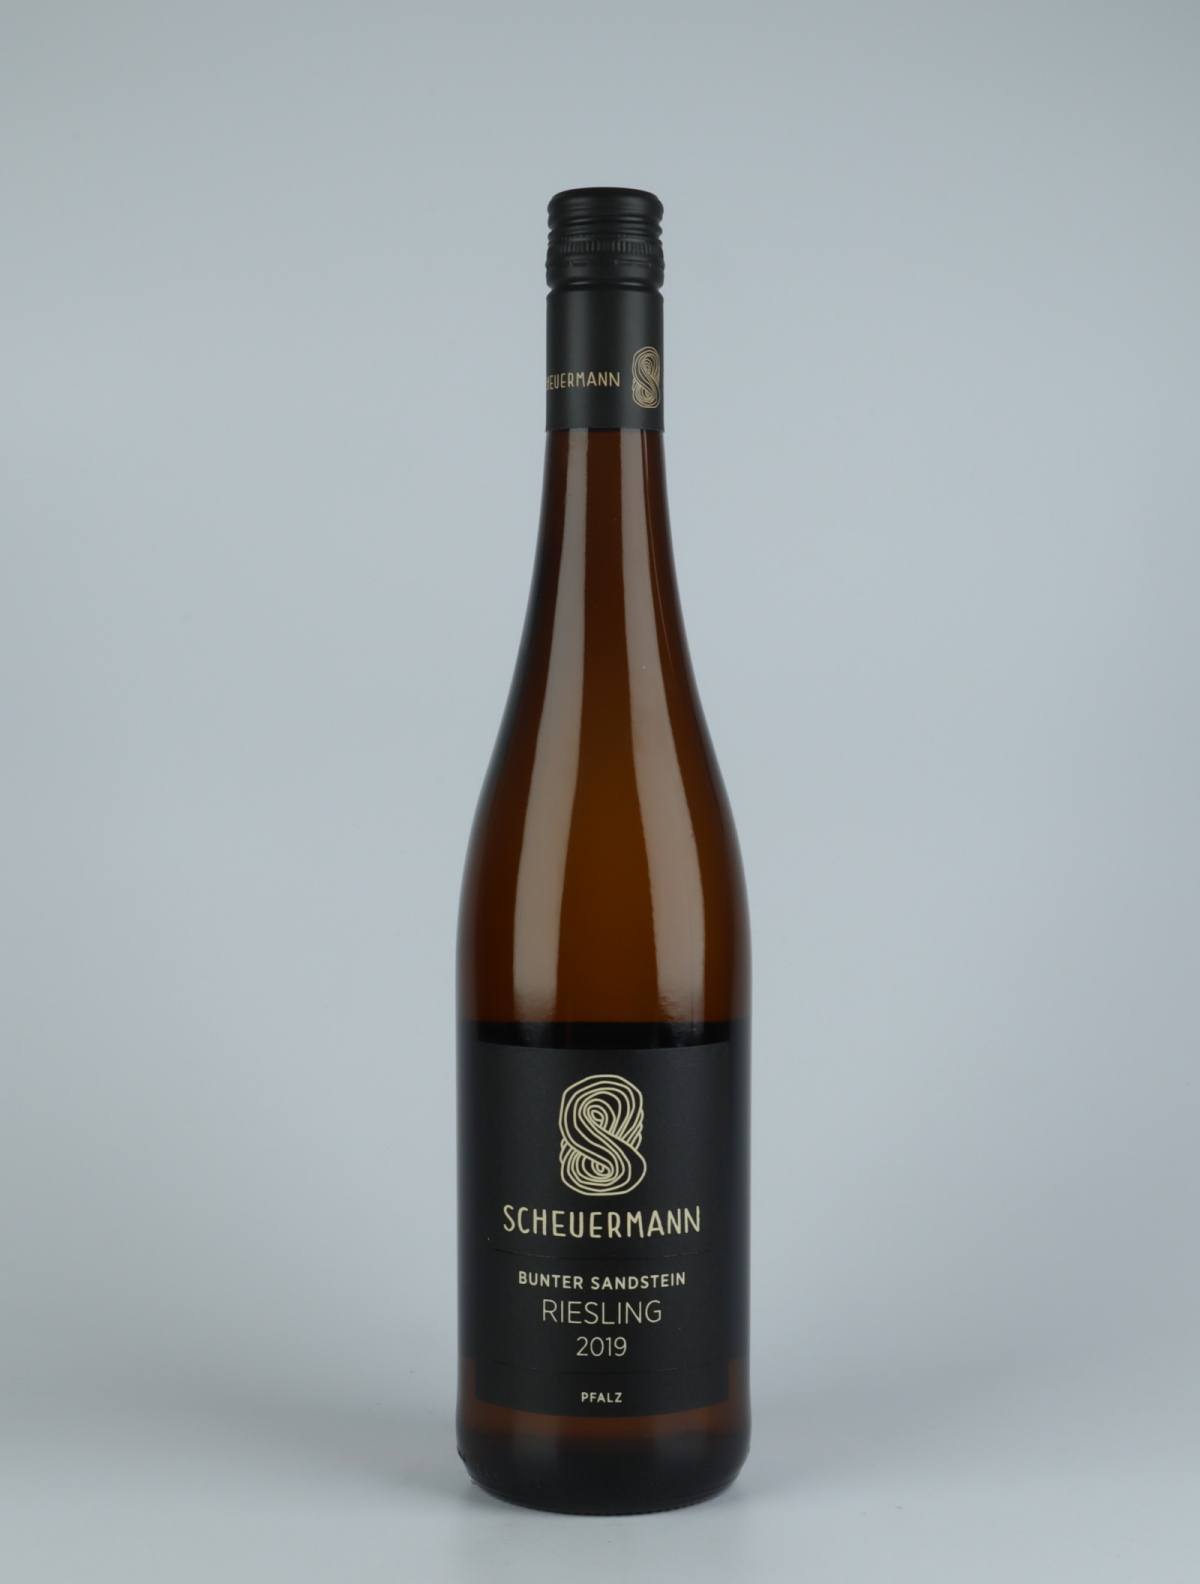 A bottle 2019 Riesling Bunter Sandstein White wine from Weingut Scheuermann, Pfalz in Germany